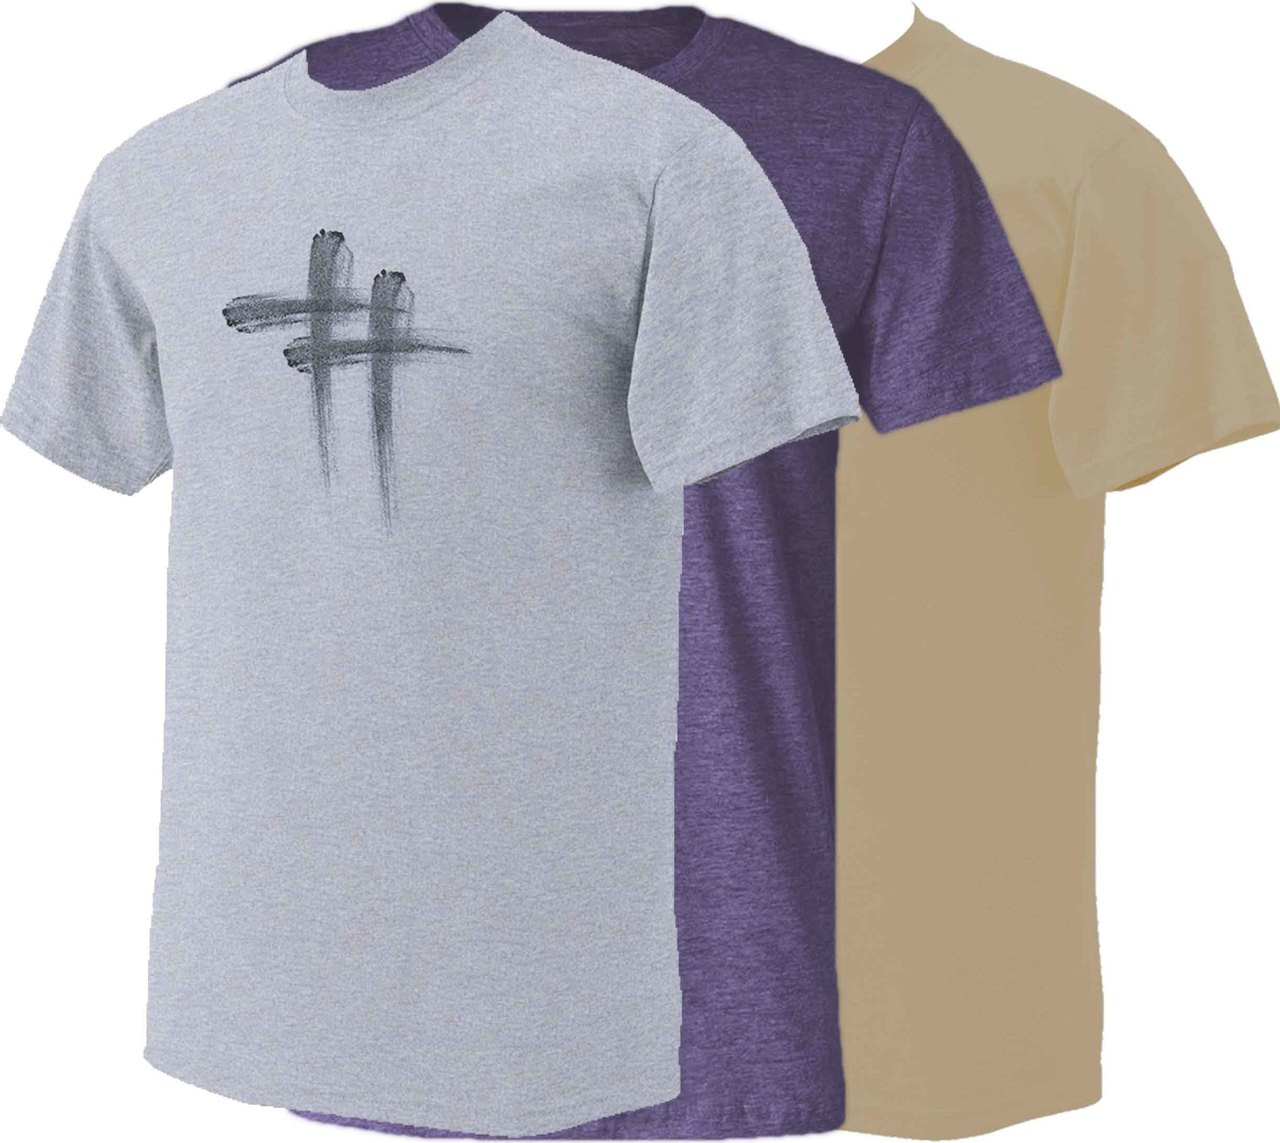 Ash Wednesday T Shirt - AshTag - Catholic to the Max - Online Catholic Store1280 x 1143